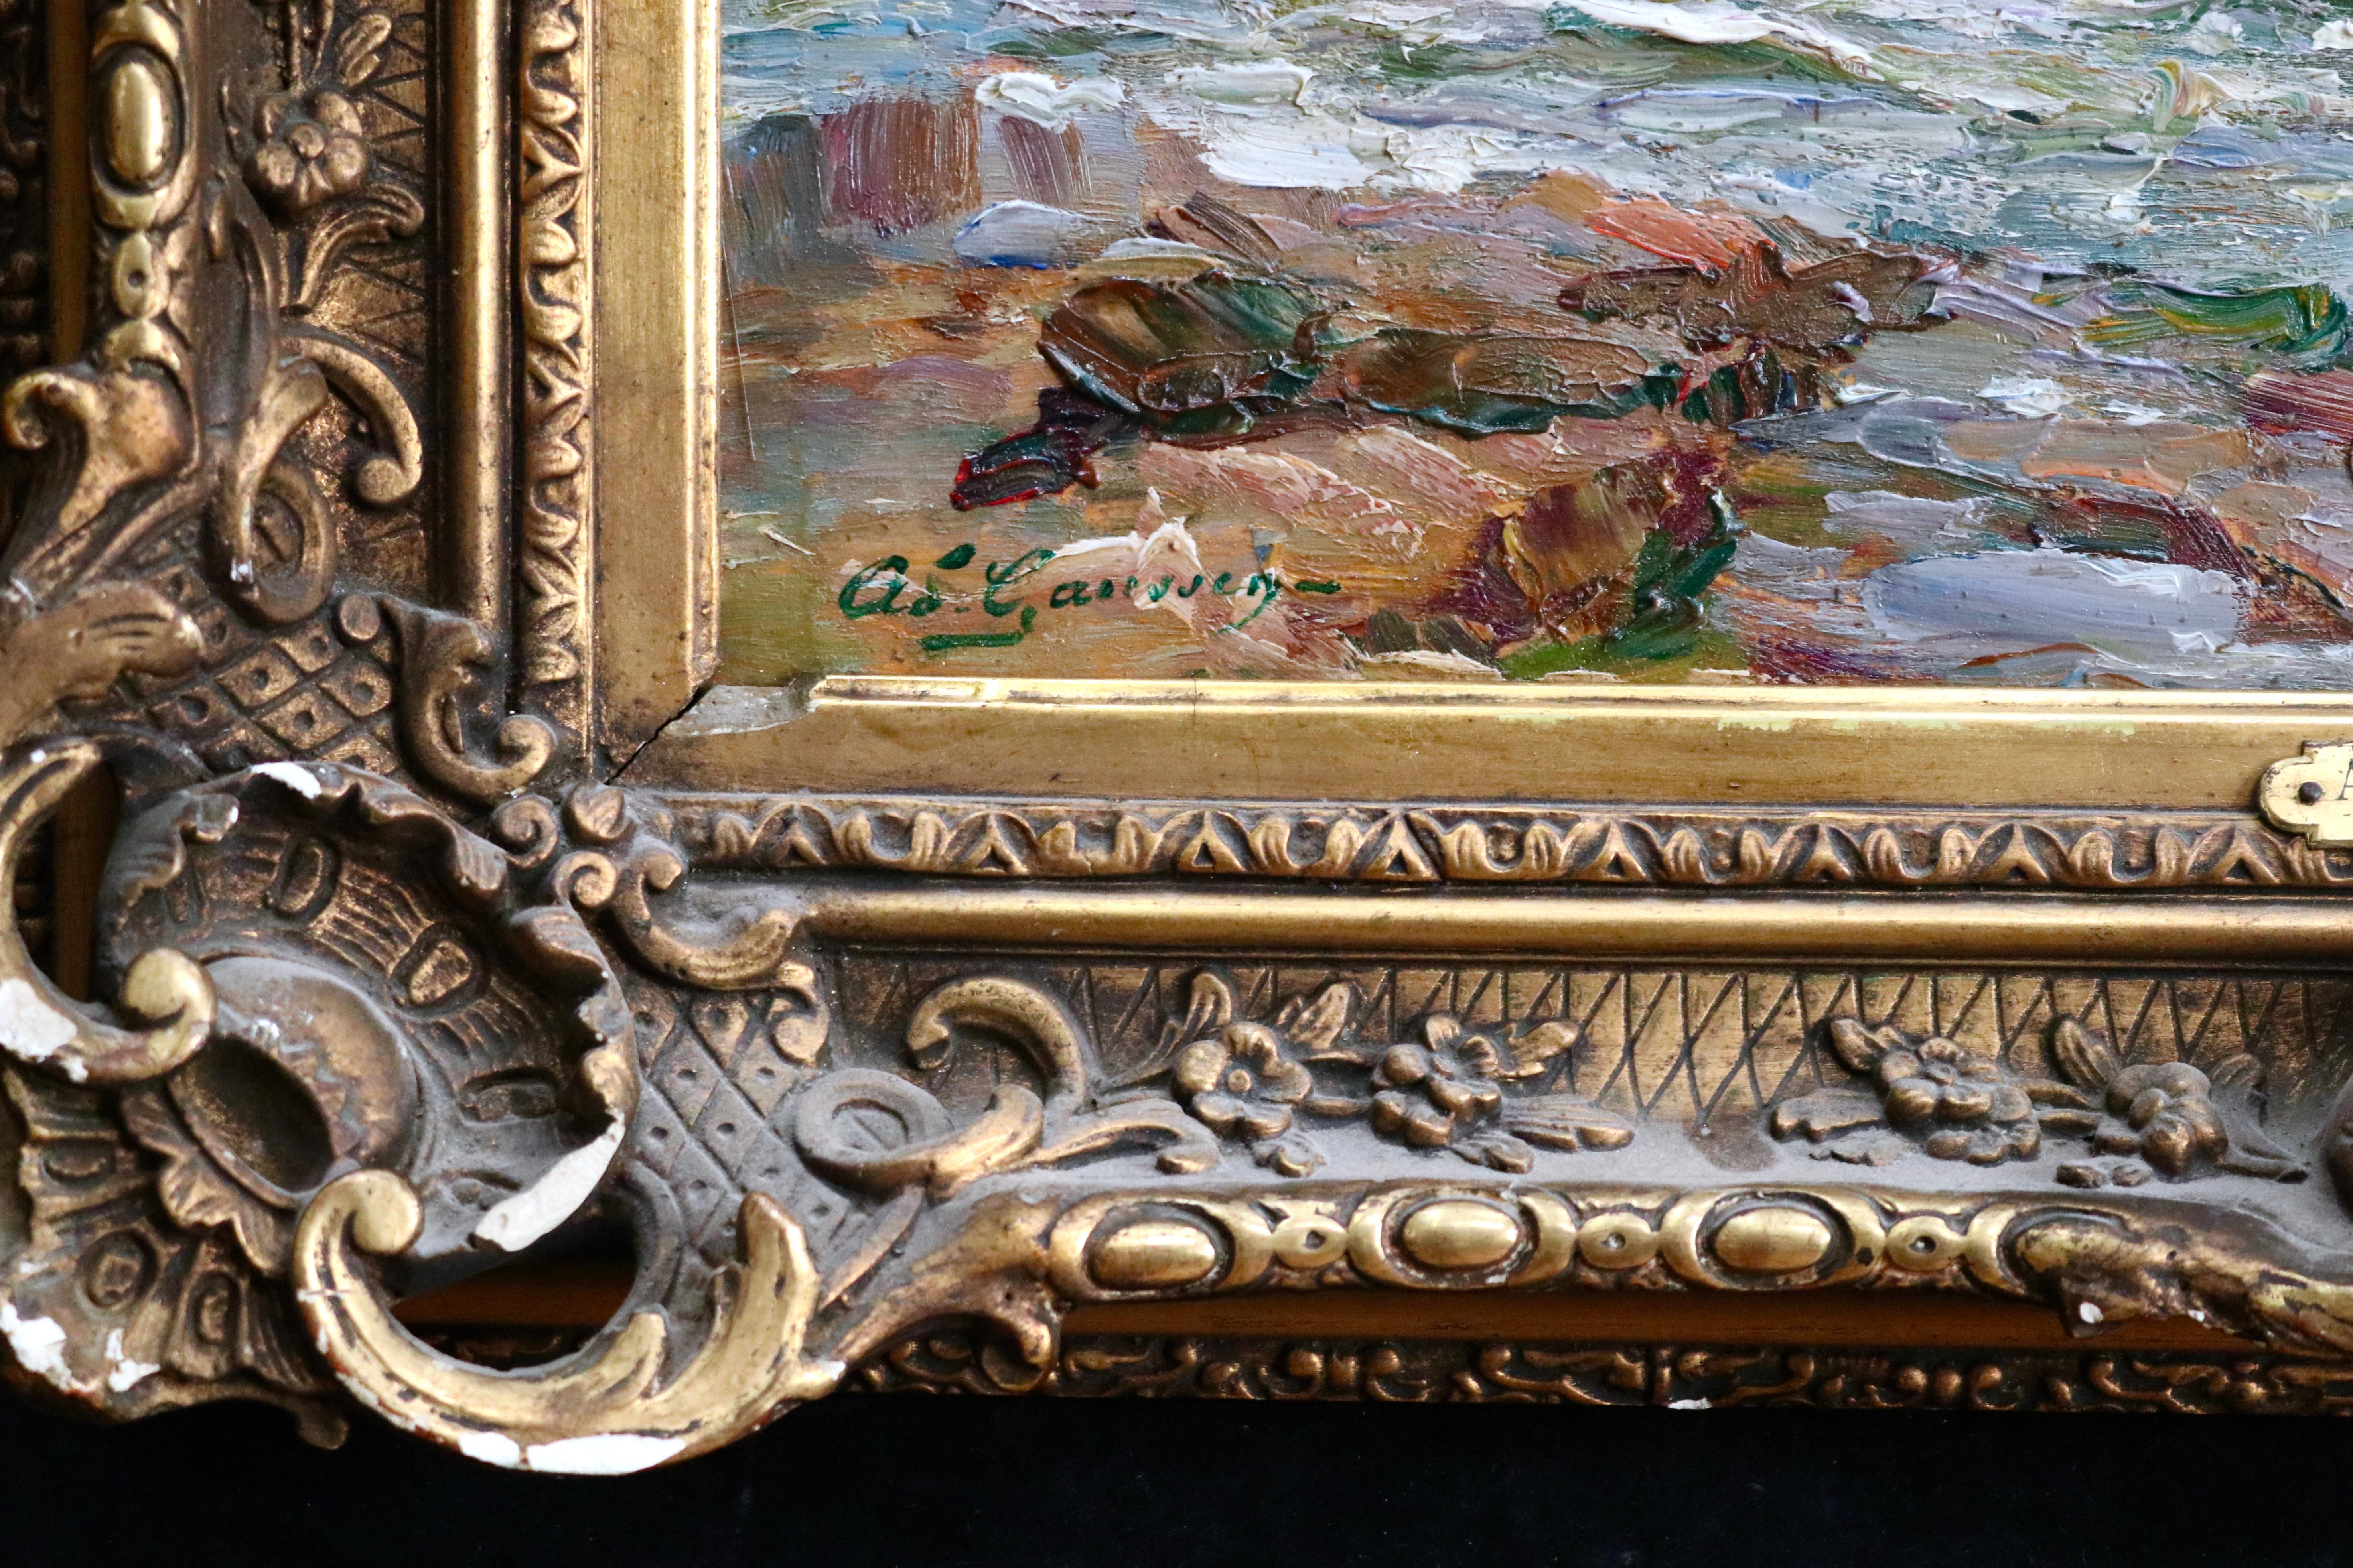 The Coast - Saint Maxime - Huile du 19e siècle, paysage de bateau en mer par Gaussen - Post-impressionnisme Painting par Adolphe Louis Gaussen